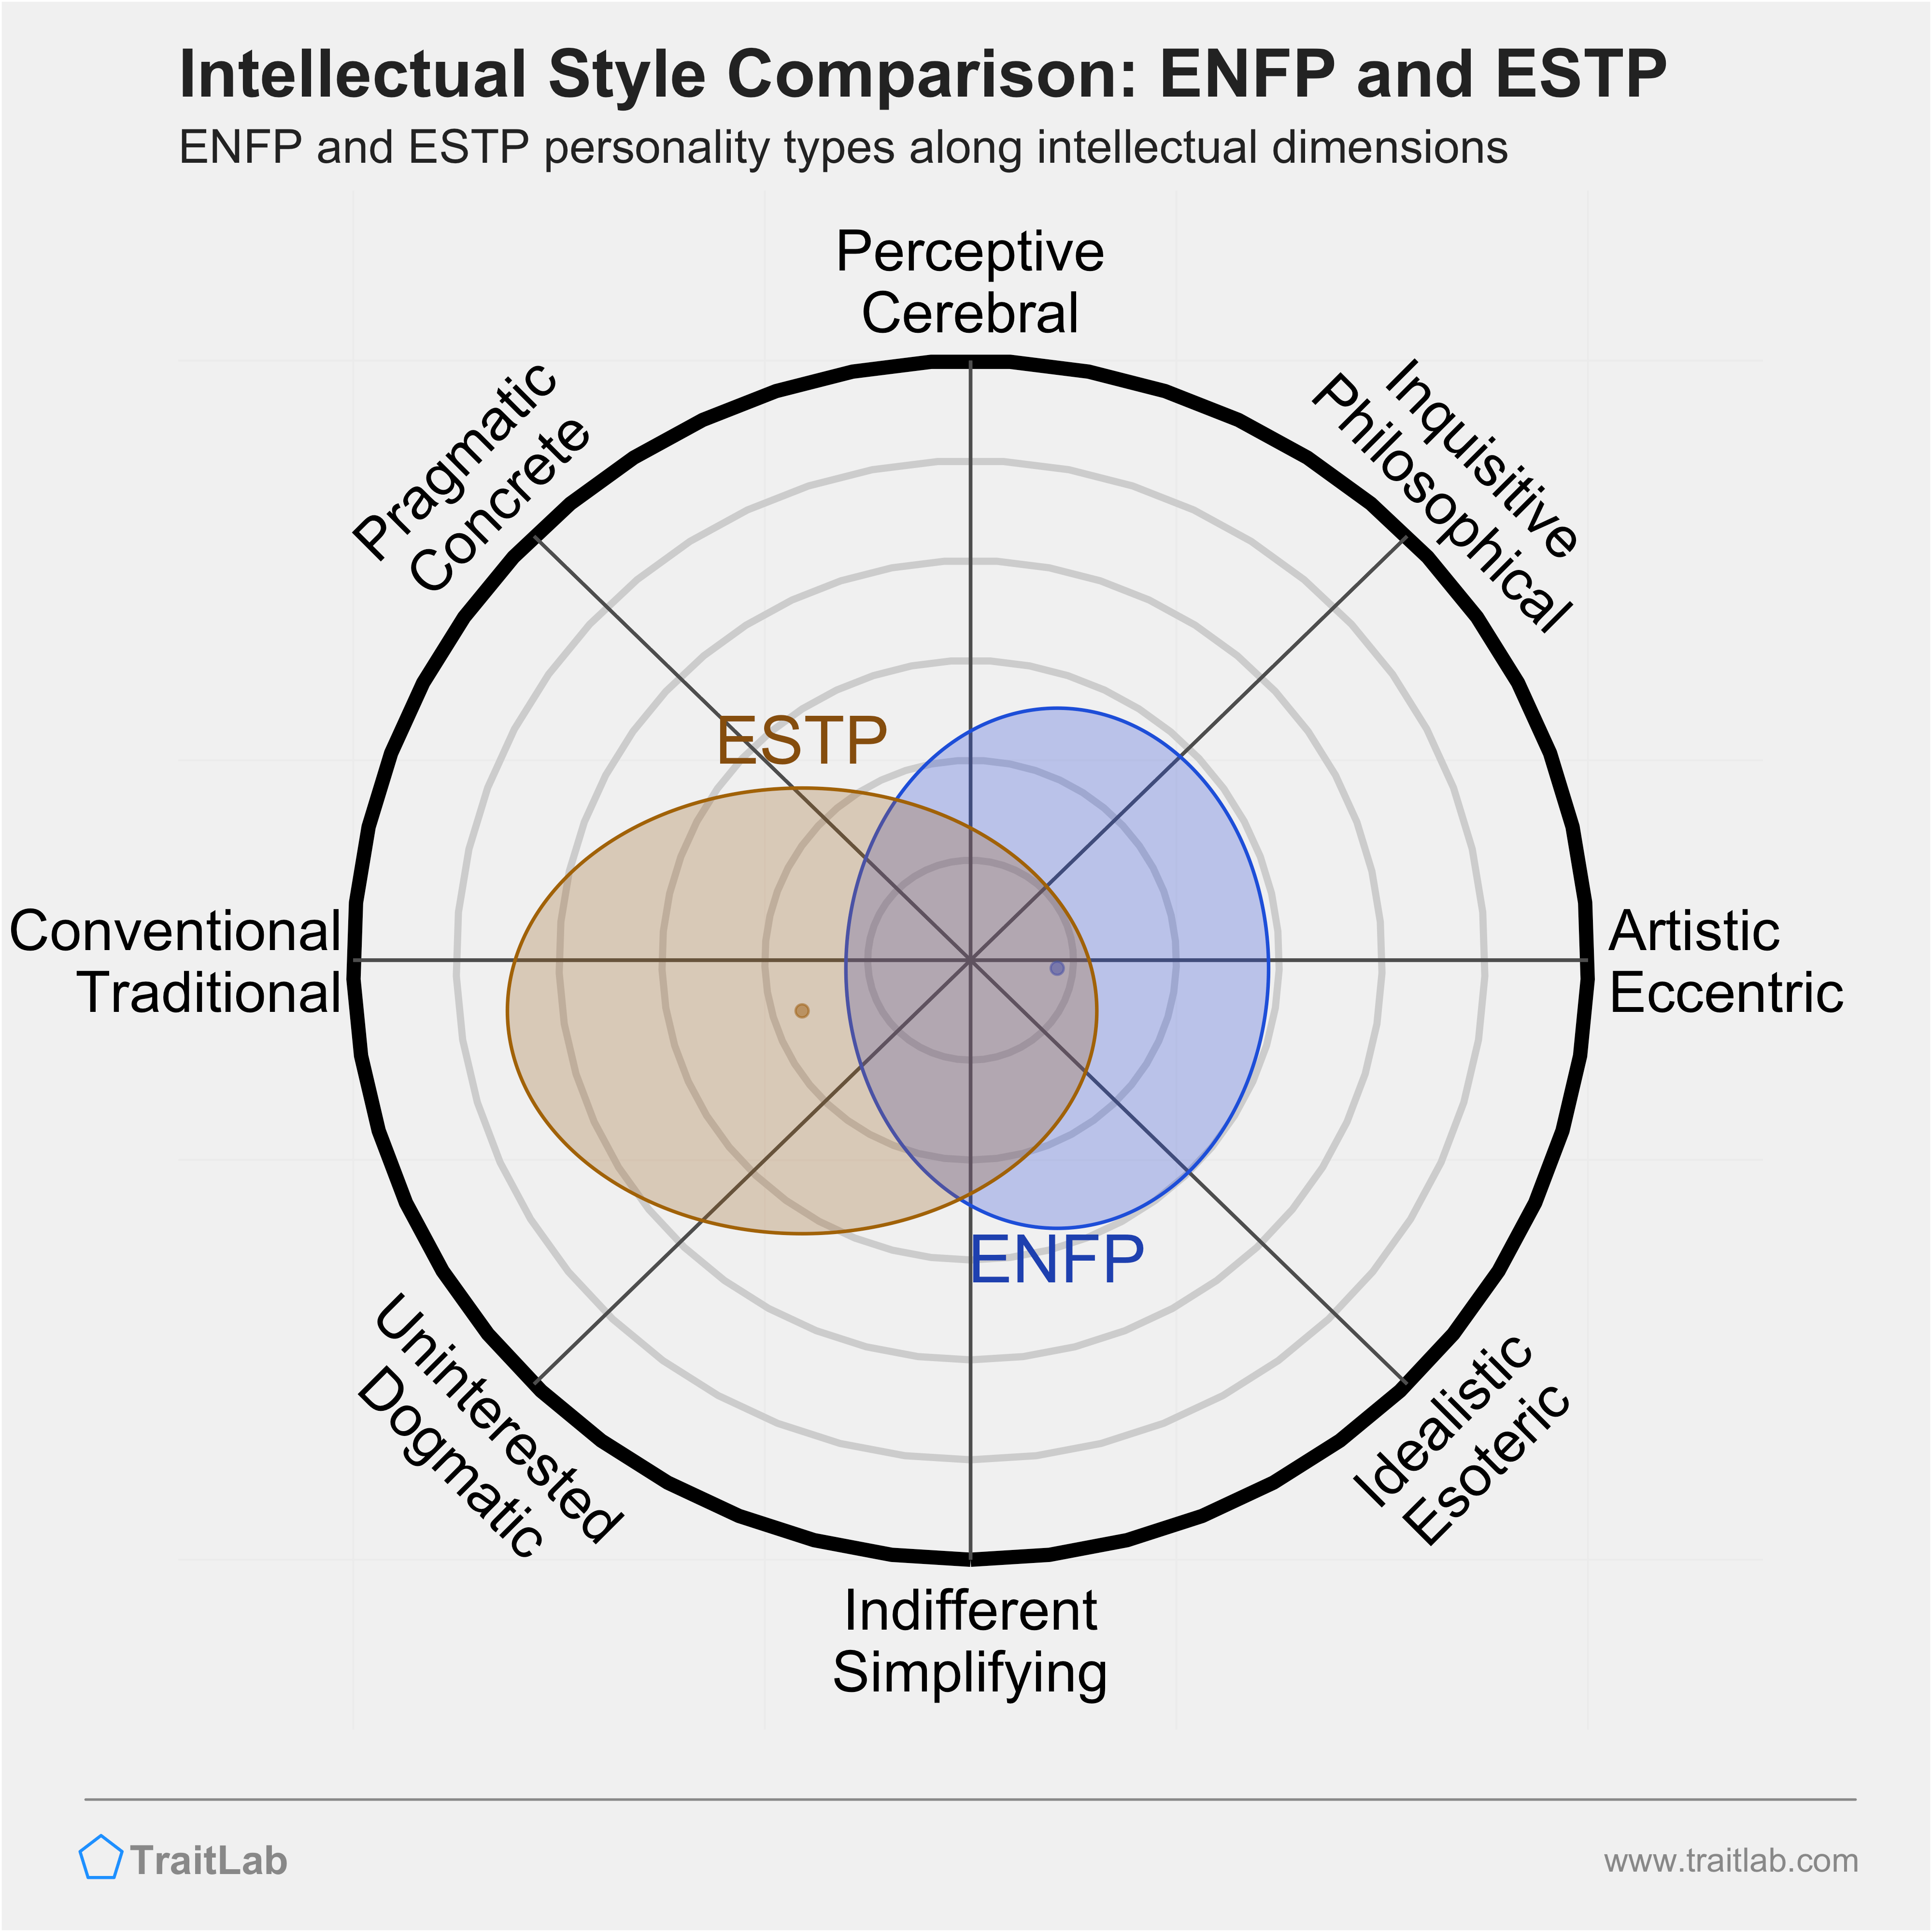 ENFP and ESTP comparison across intellectual dimensions